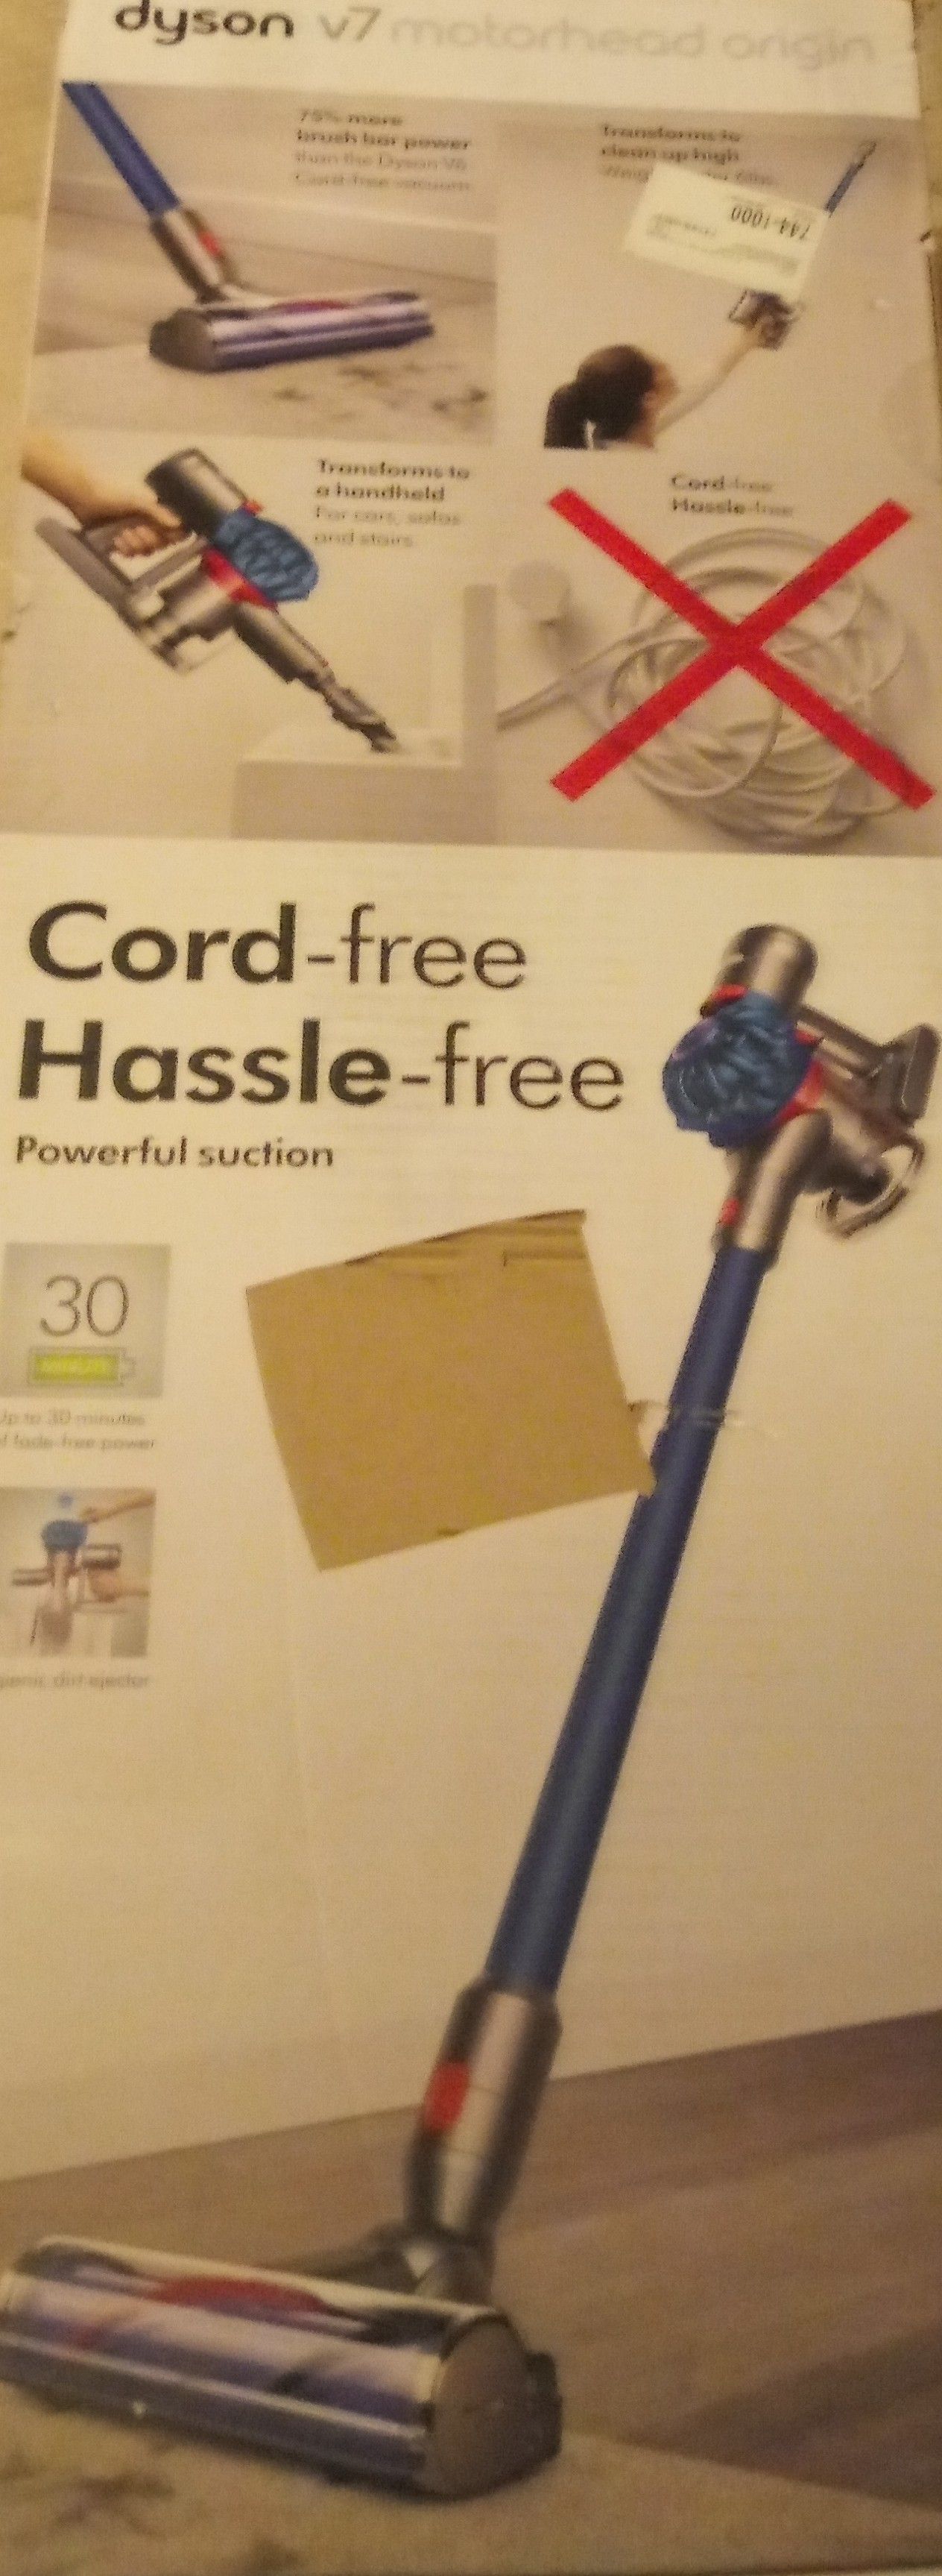 Dyson v7 cord free hassle free vacuum